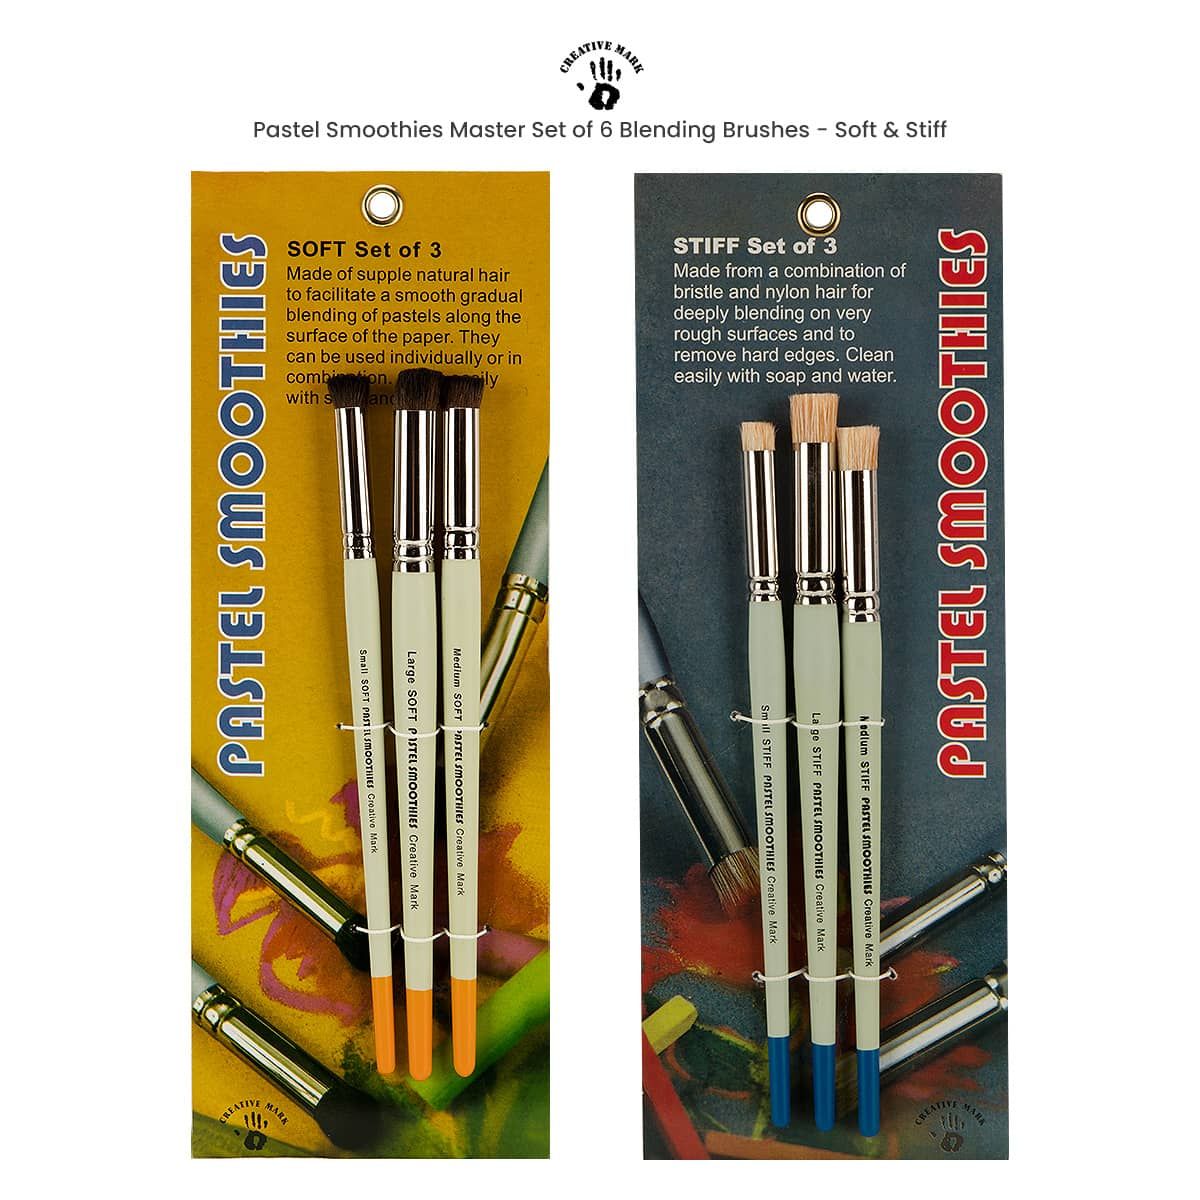 Paint Mark 48 Watercolor Paint Set With 2 Blending Brush Pens, Watercolor  Paint